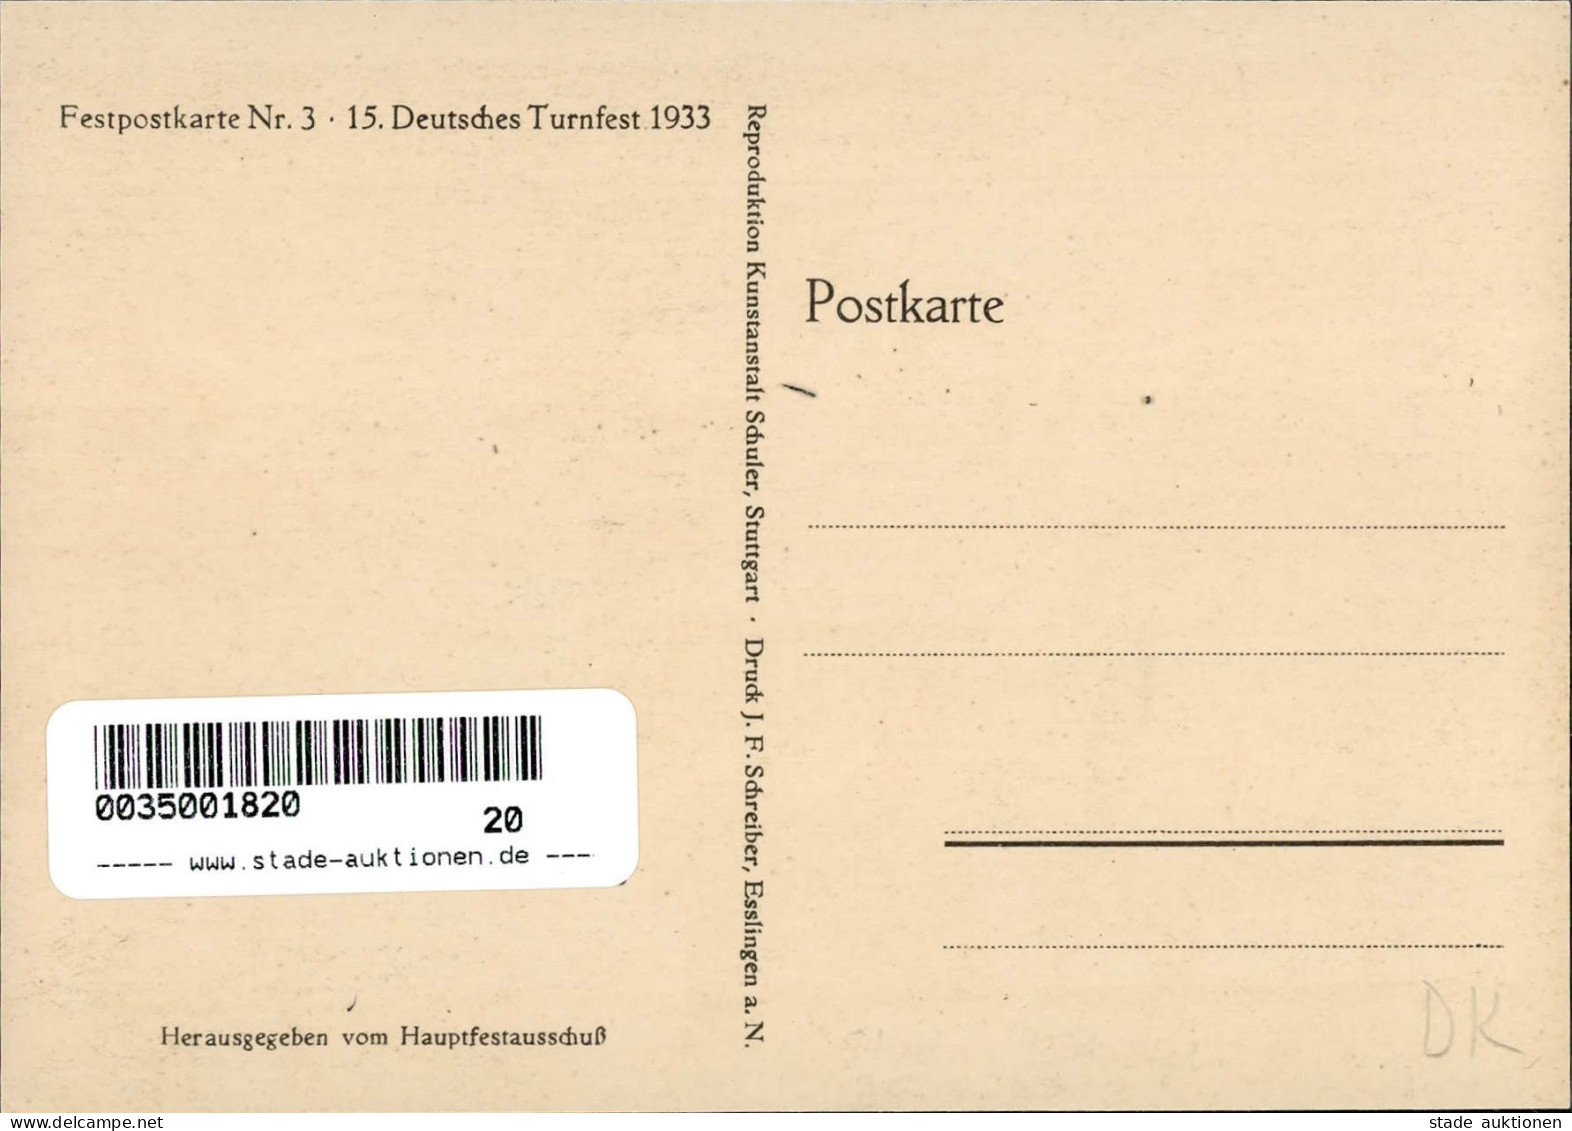 STUTTGART WK II - 15. DEUTSCHES TURNFEST 1933 Festpostkarte Nr. 3 I - Weltkrieg 1939-45